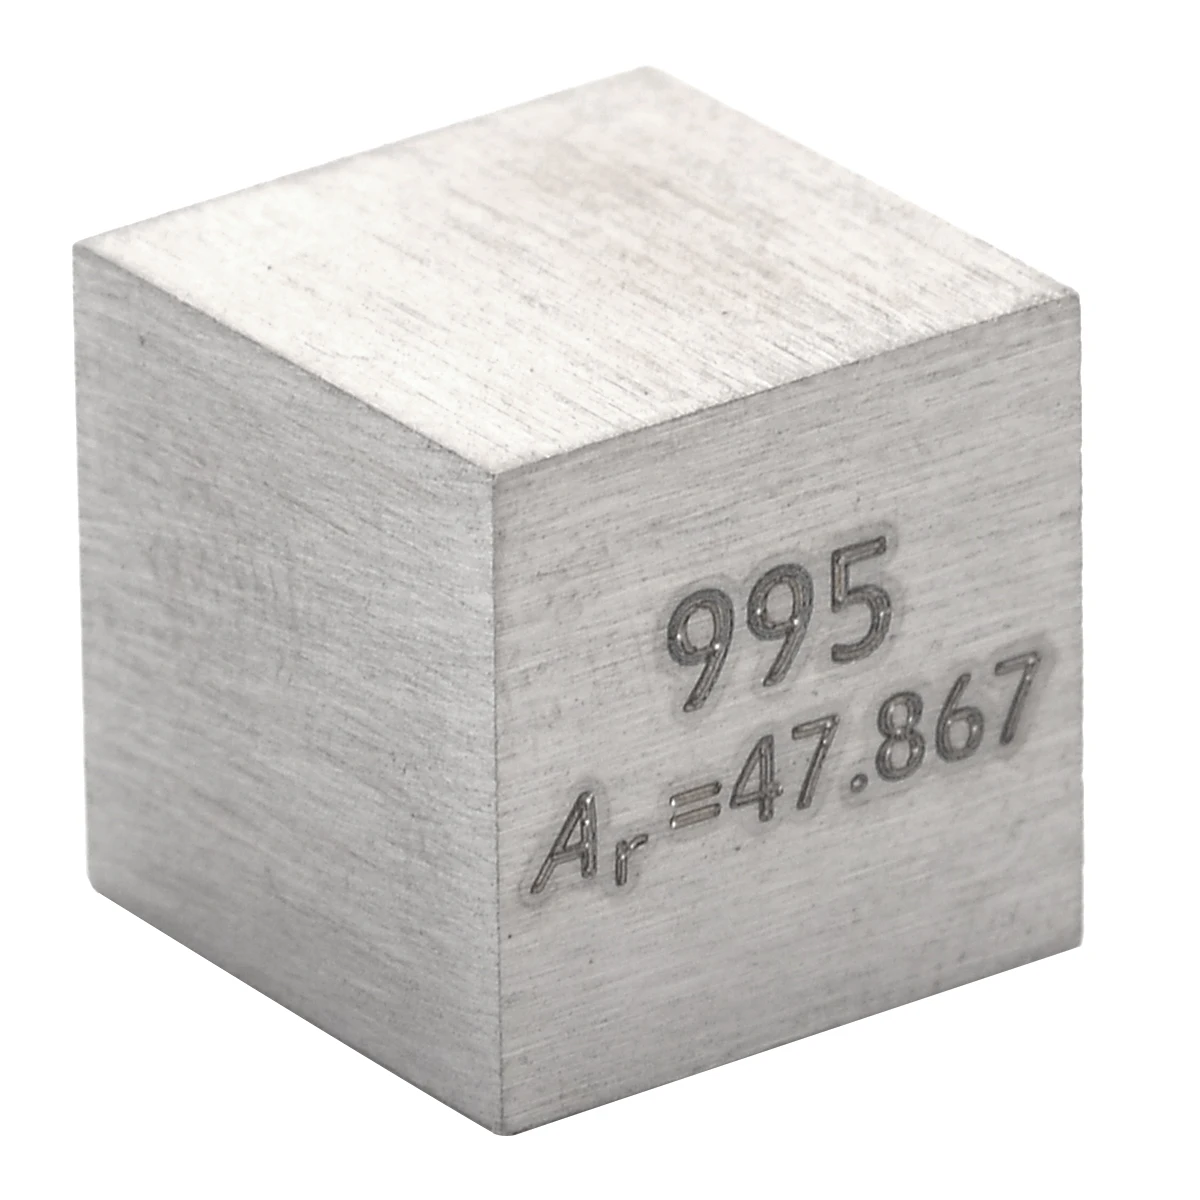 1 шт. высокой чистоты 99.5% титановый Ti металлический резной элемент, электронный стол 10 мм куб, замечательная коллекция 10x10x10 мм